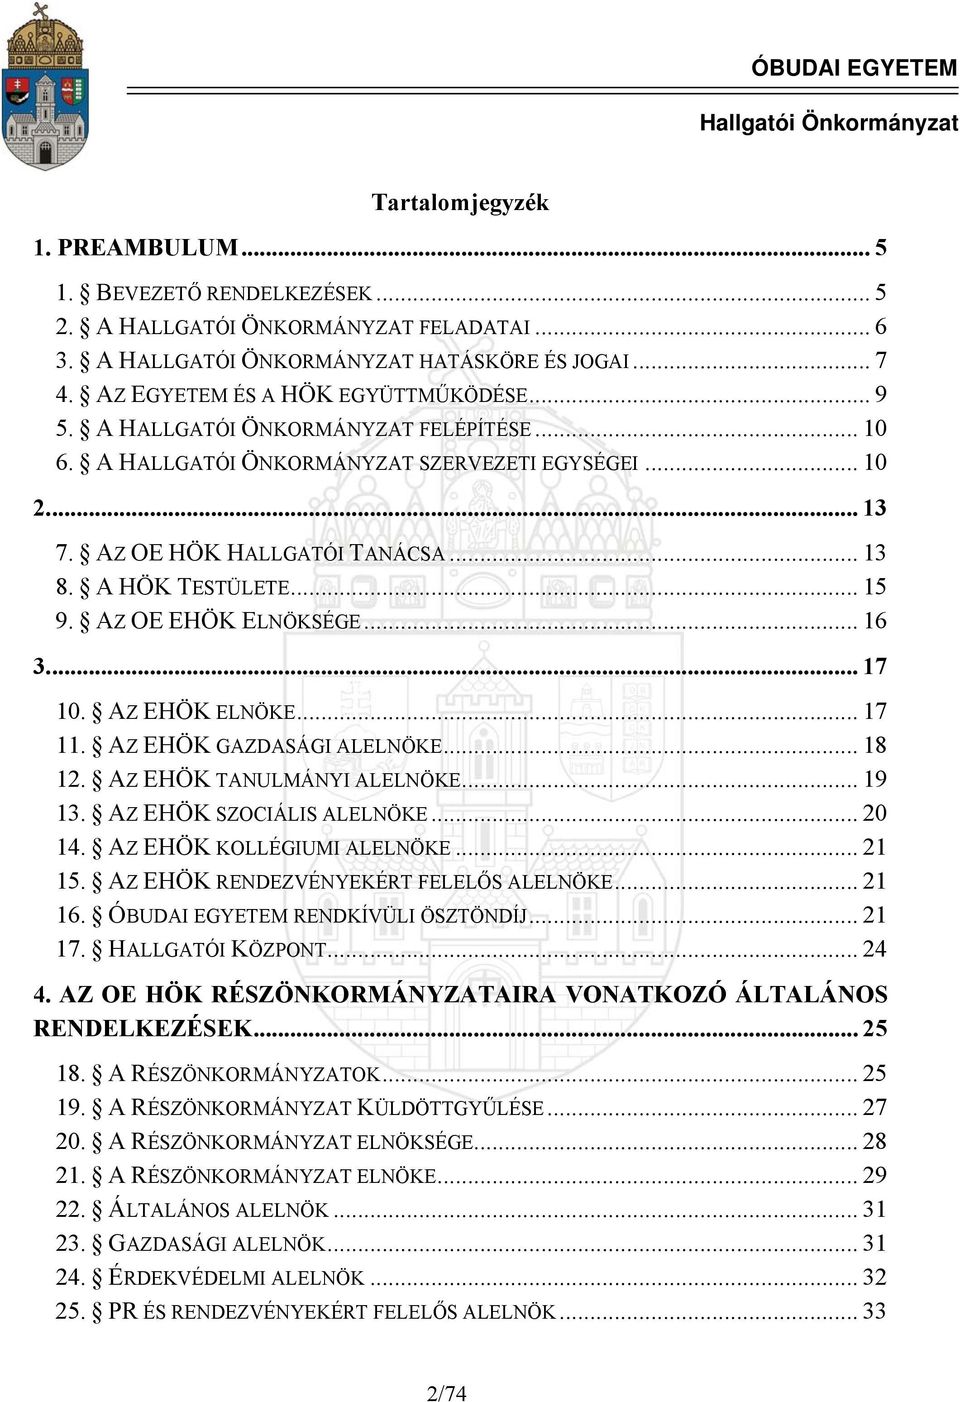 Az Óbudai Egyetem Ideiglenes Szervezeti és Működési Szabályzata 3.  melléklet Hallgatói követelményrendszer 10. Függelék - PDF Ingyenes letöltés